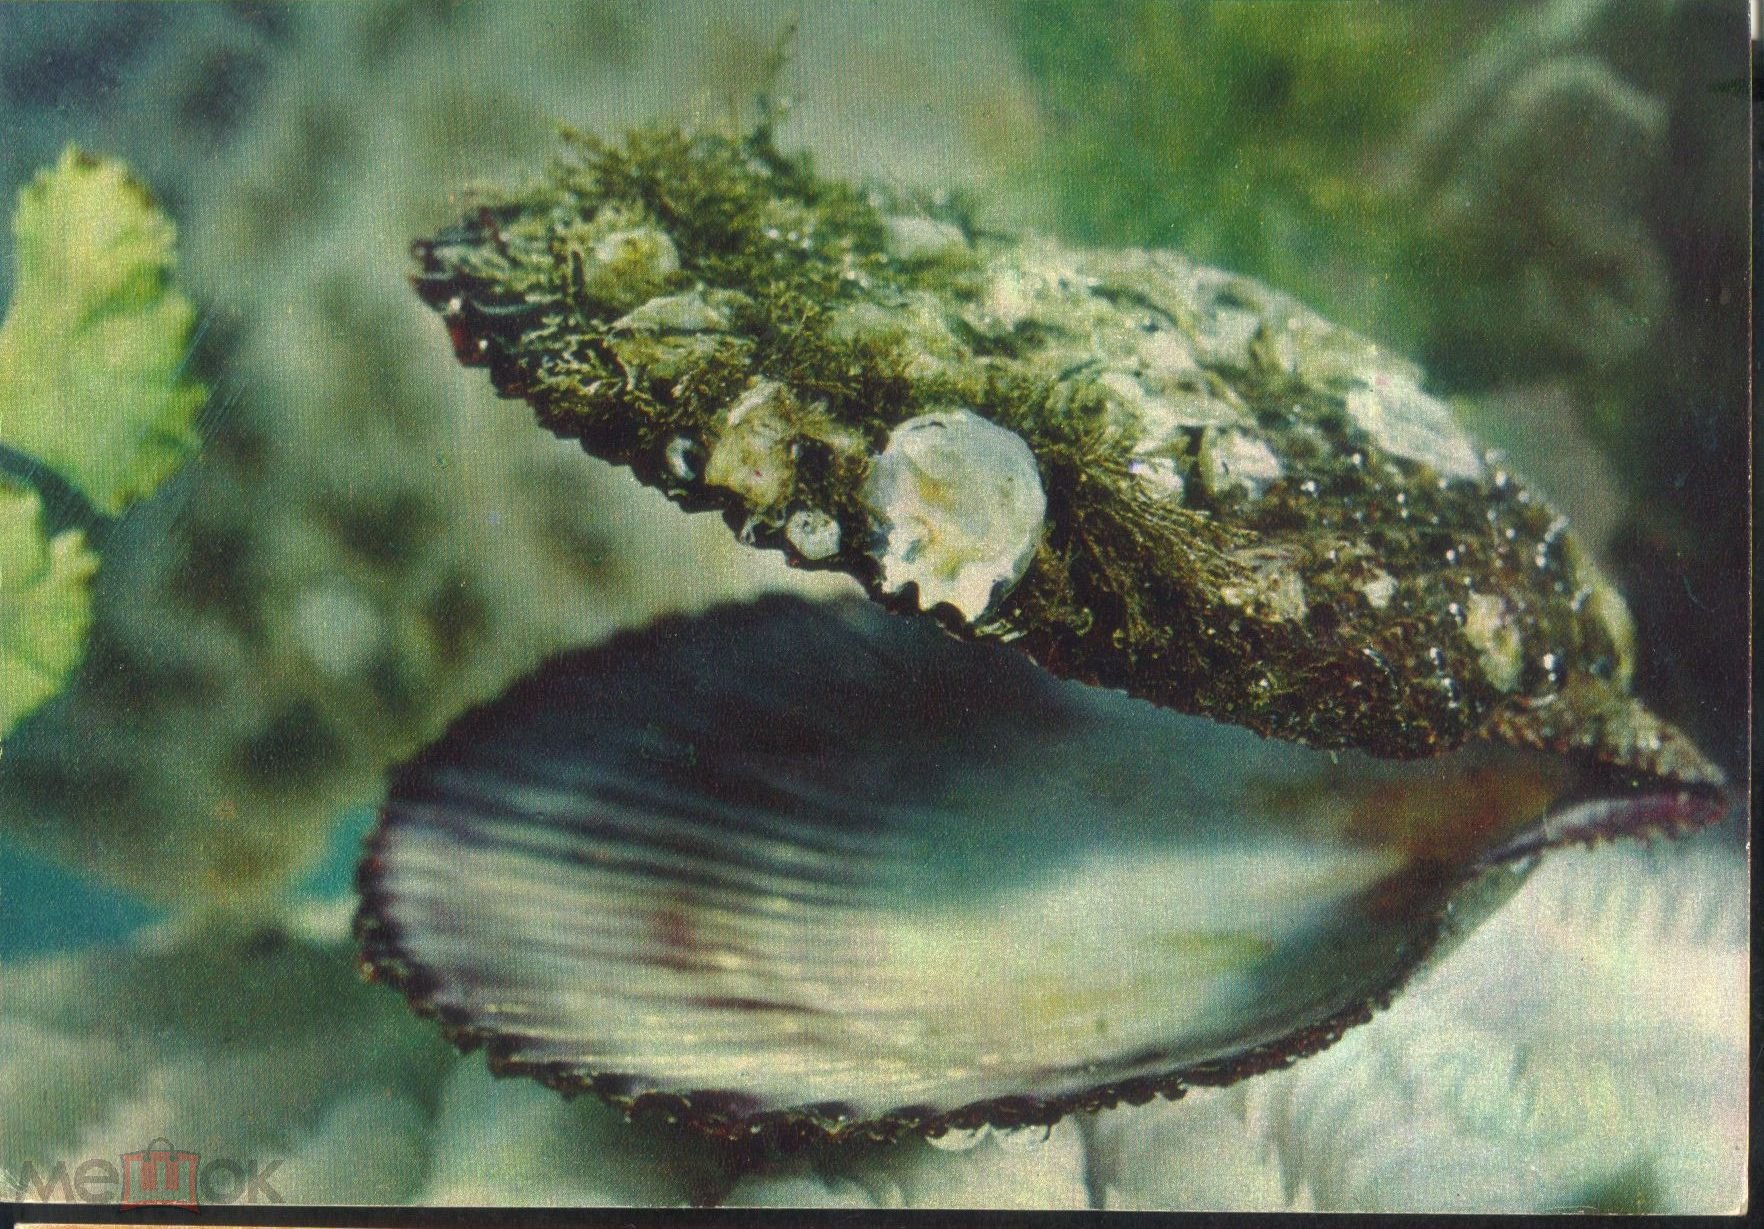 Двустворчатые моллюски обитатели воды